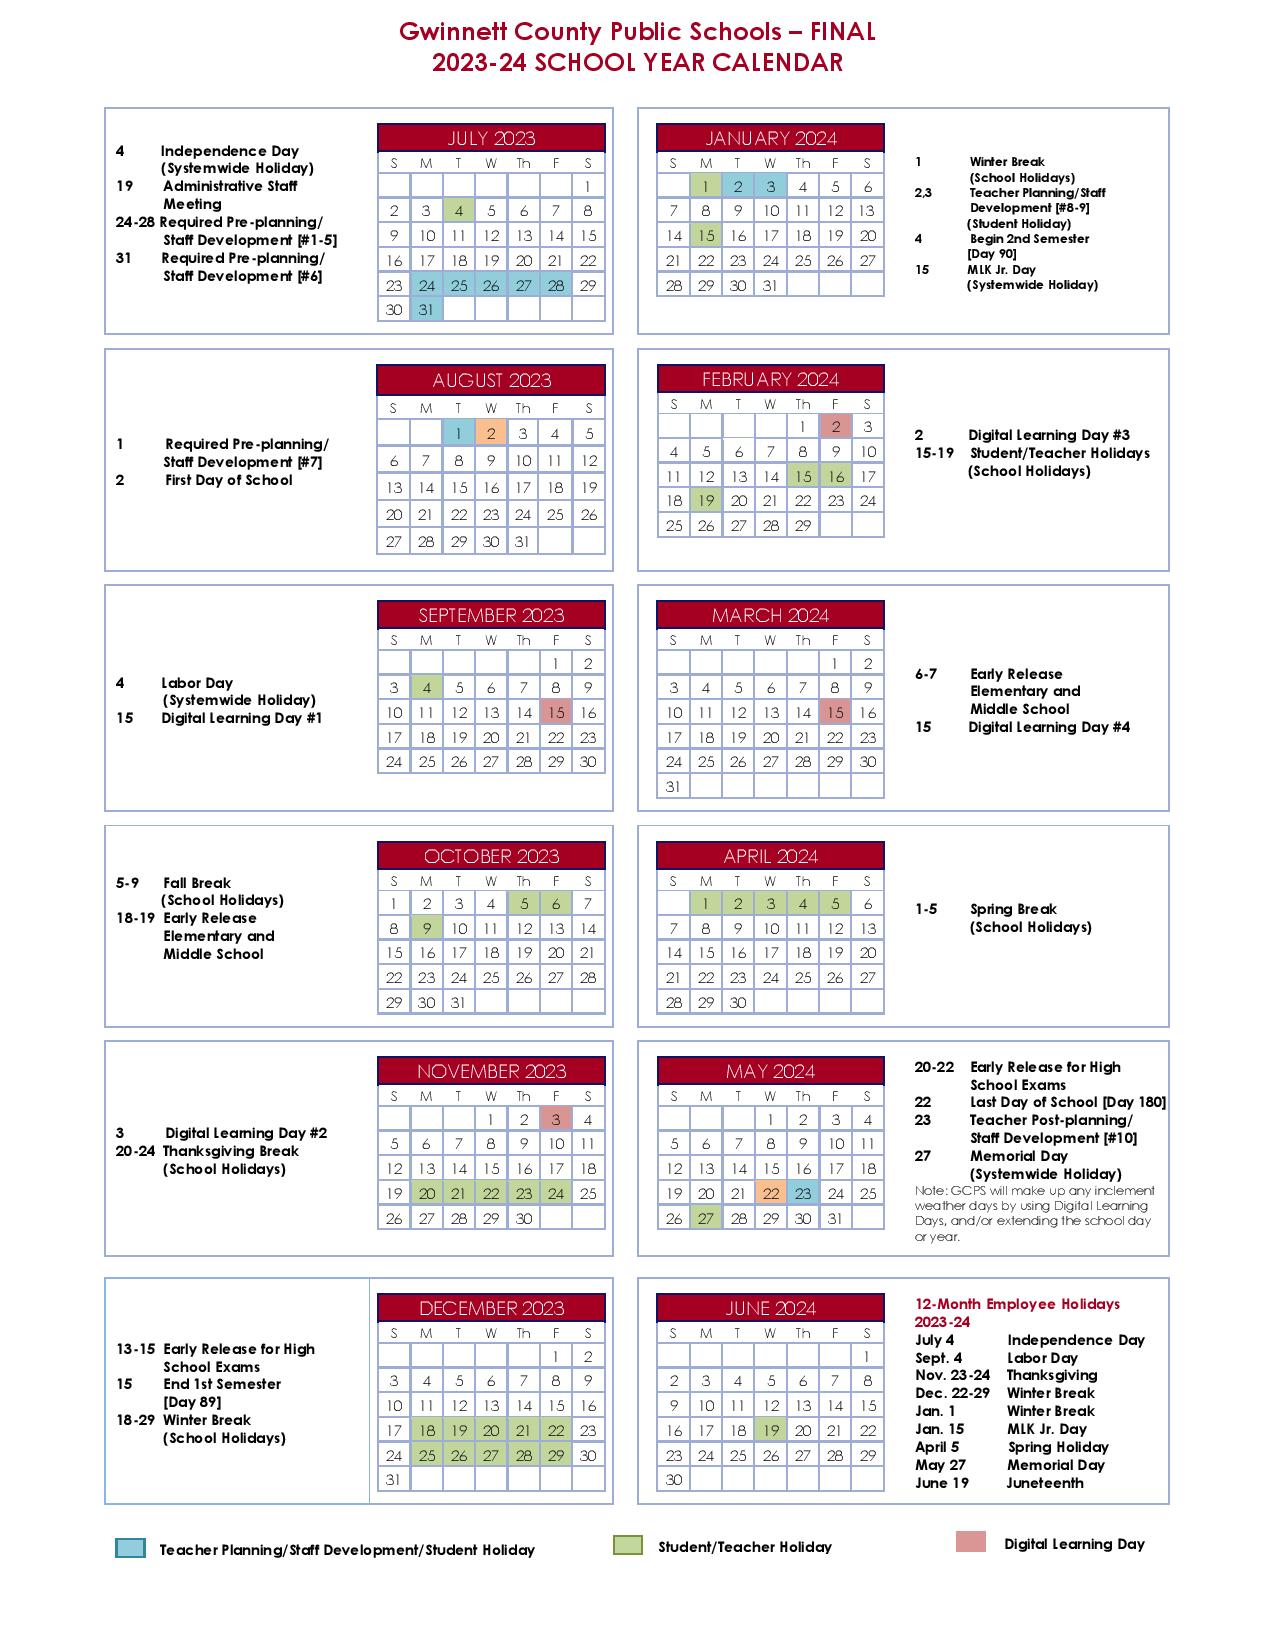 gwinnett-county-public-schools-calendar-holidays-2023-2024-school